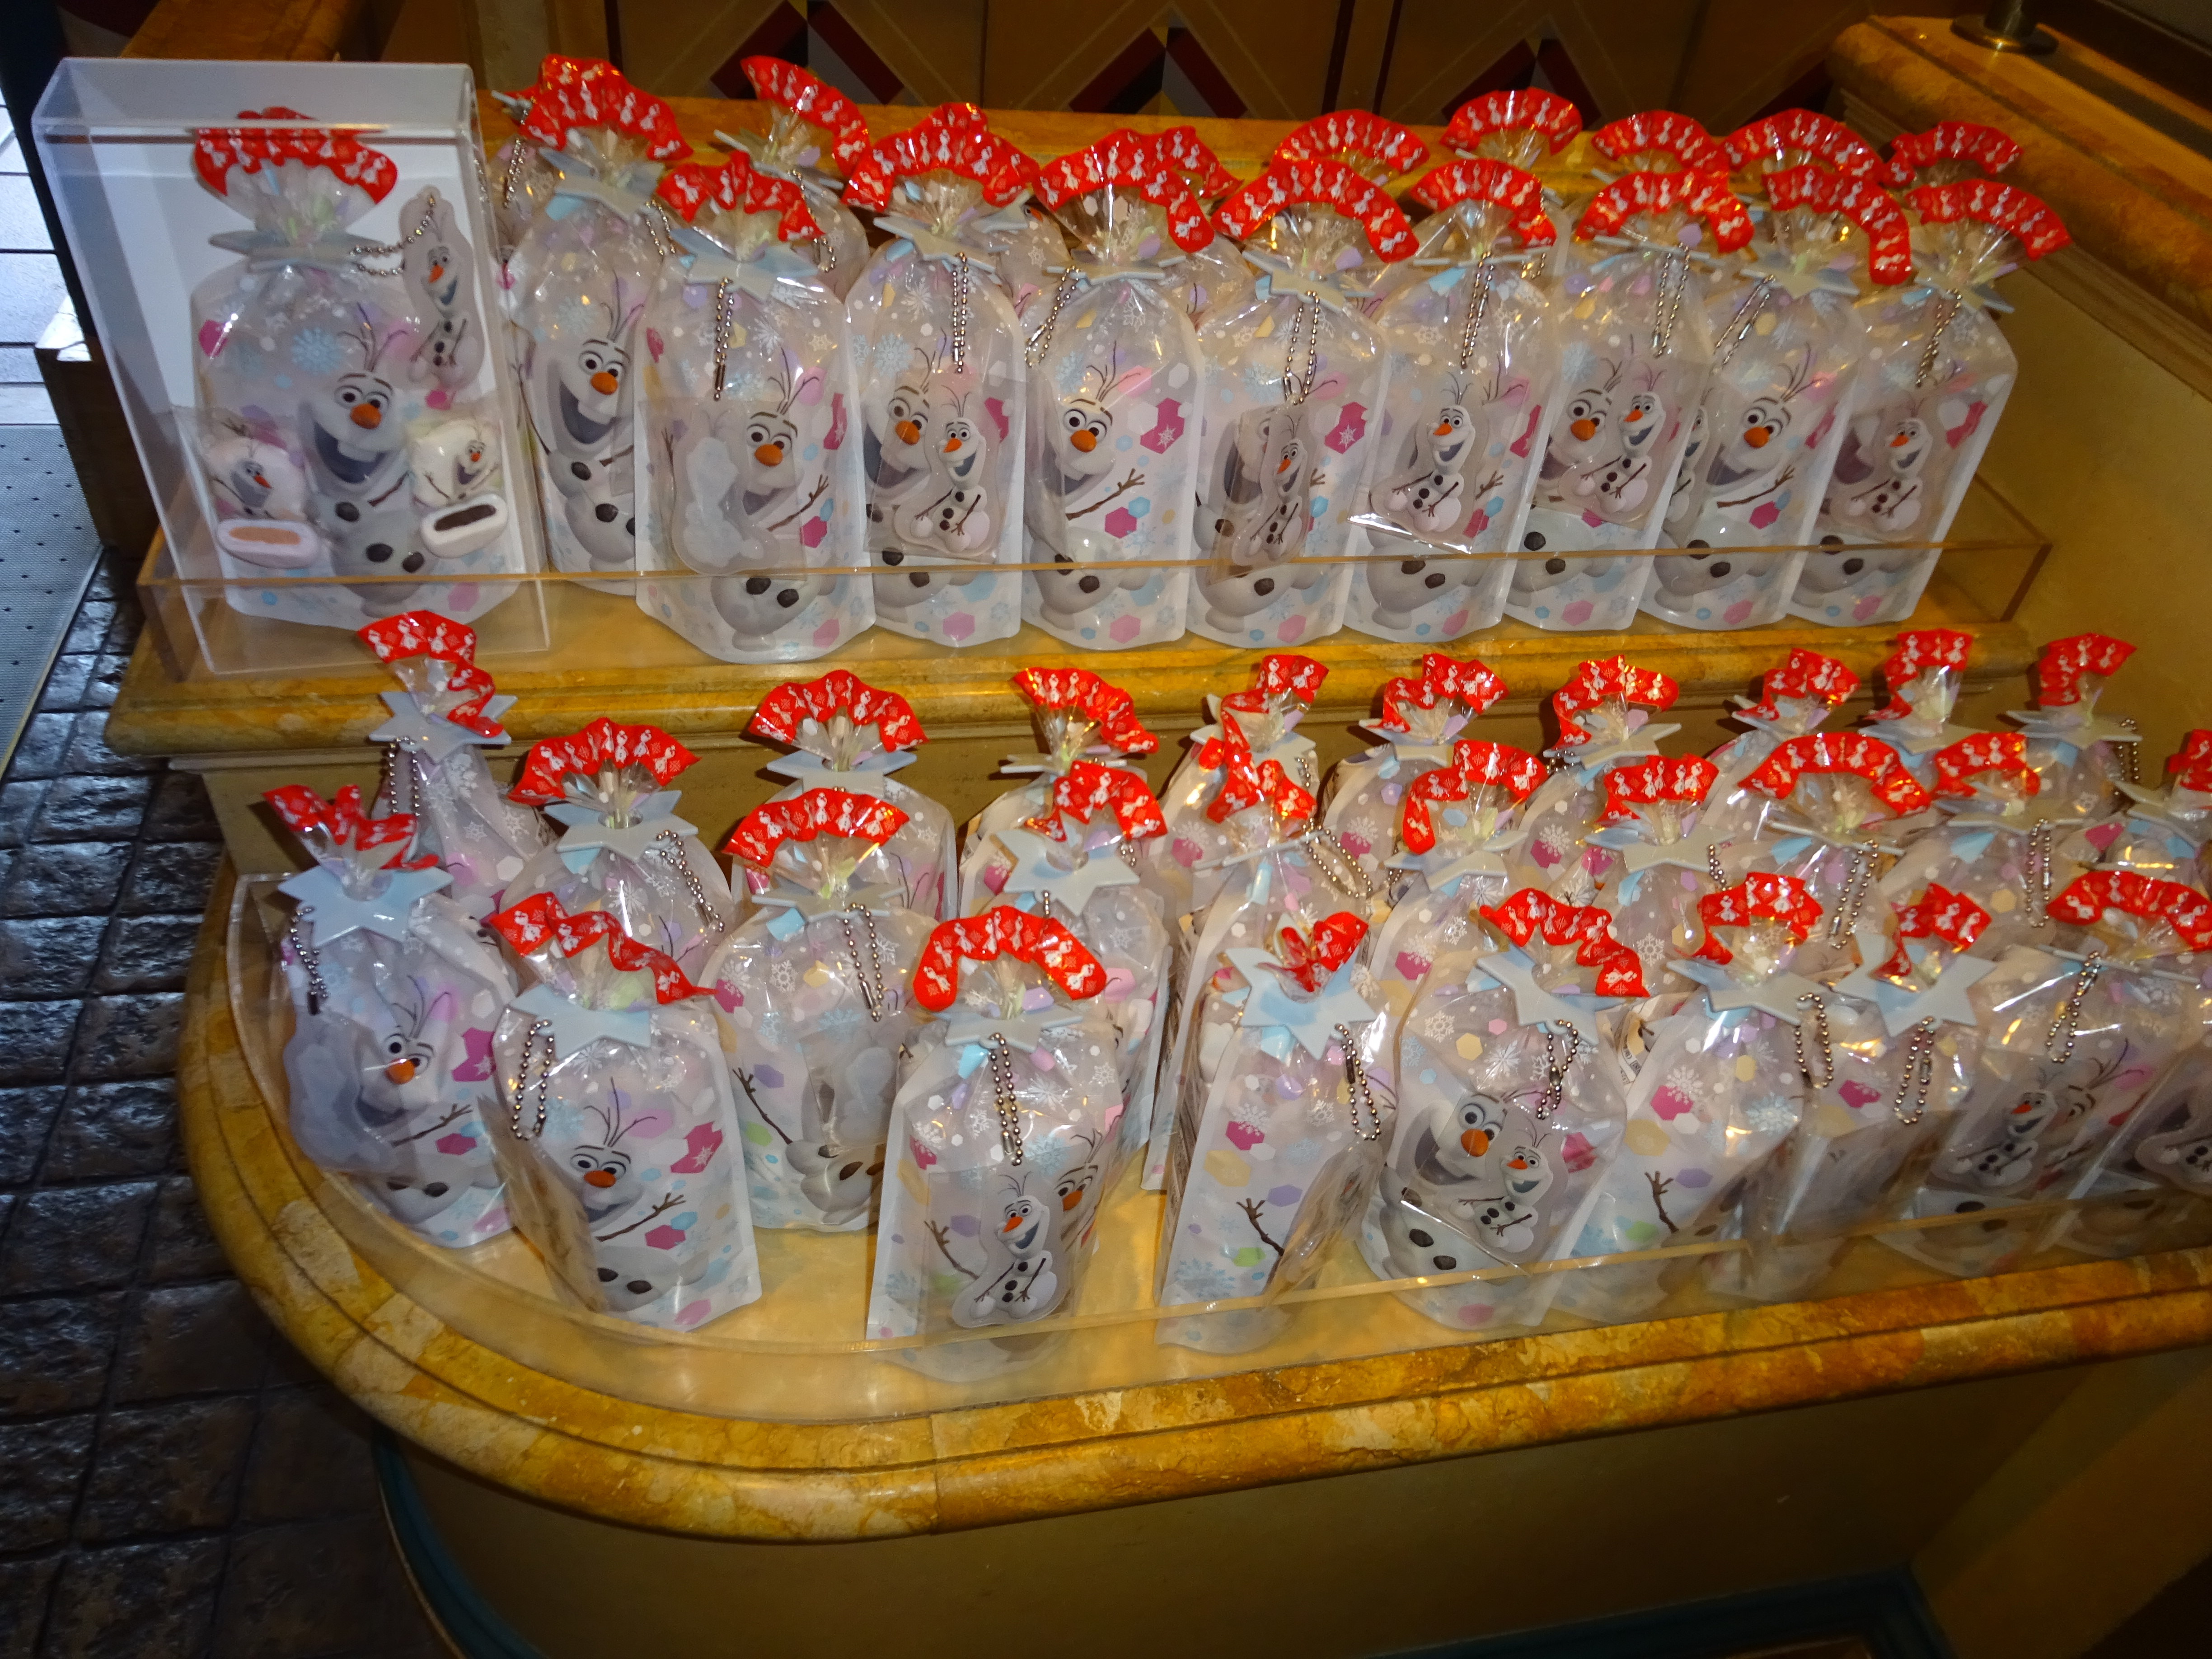 ディズニリゾート2015 ランドとシーでお土産で買いたいお菓子のご紹介 人気のディズニープリンセス アリエル モチーフのお菓子もご紹介しております Woocディズニーイベント グッズ情報ブログ